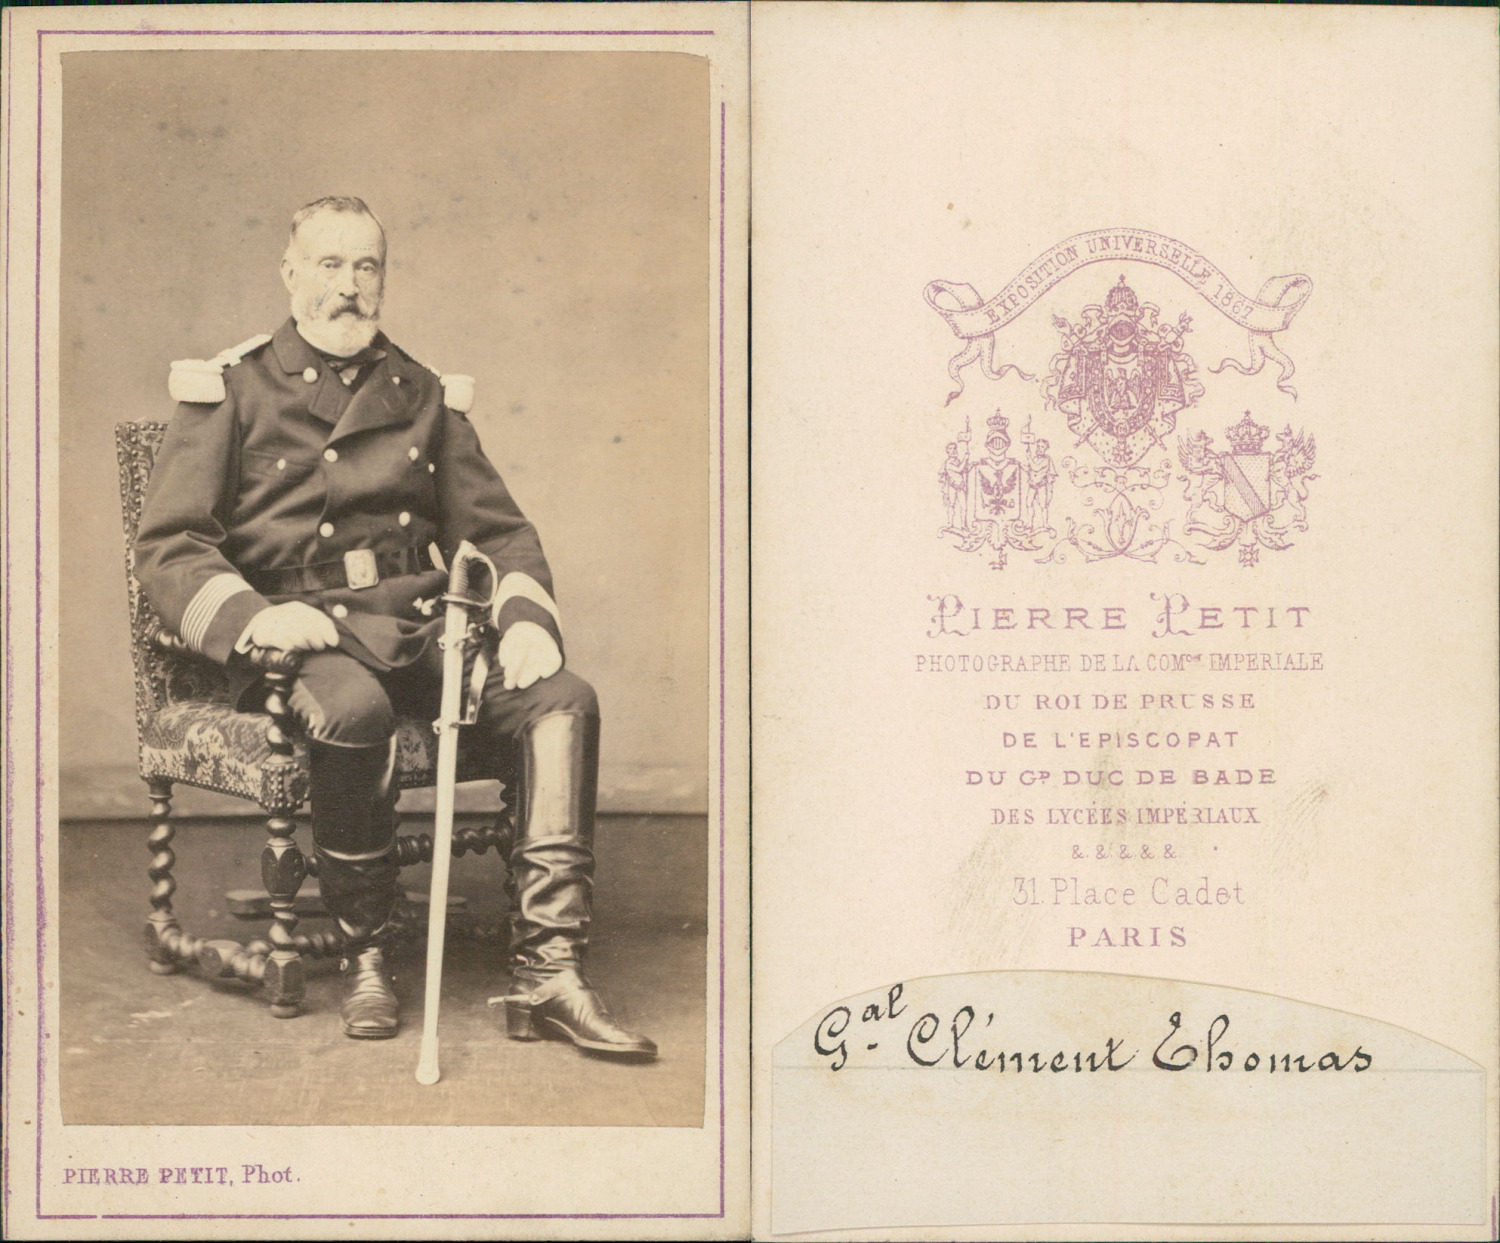 Pierre Petit, Paris, General Clément-Thomas Vintage CDV albumen business card.